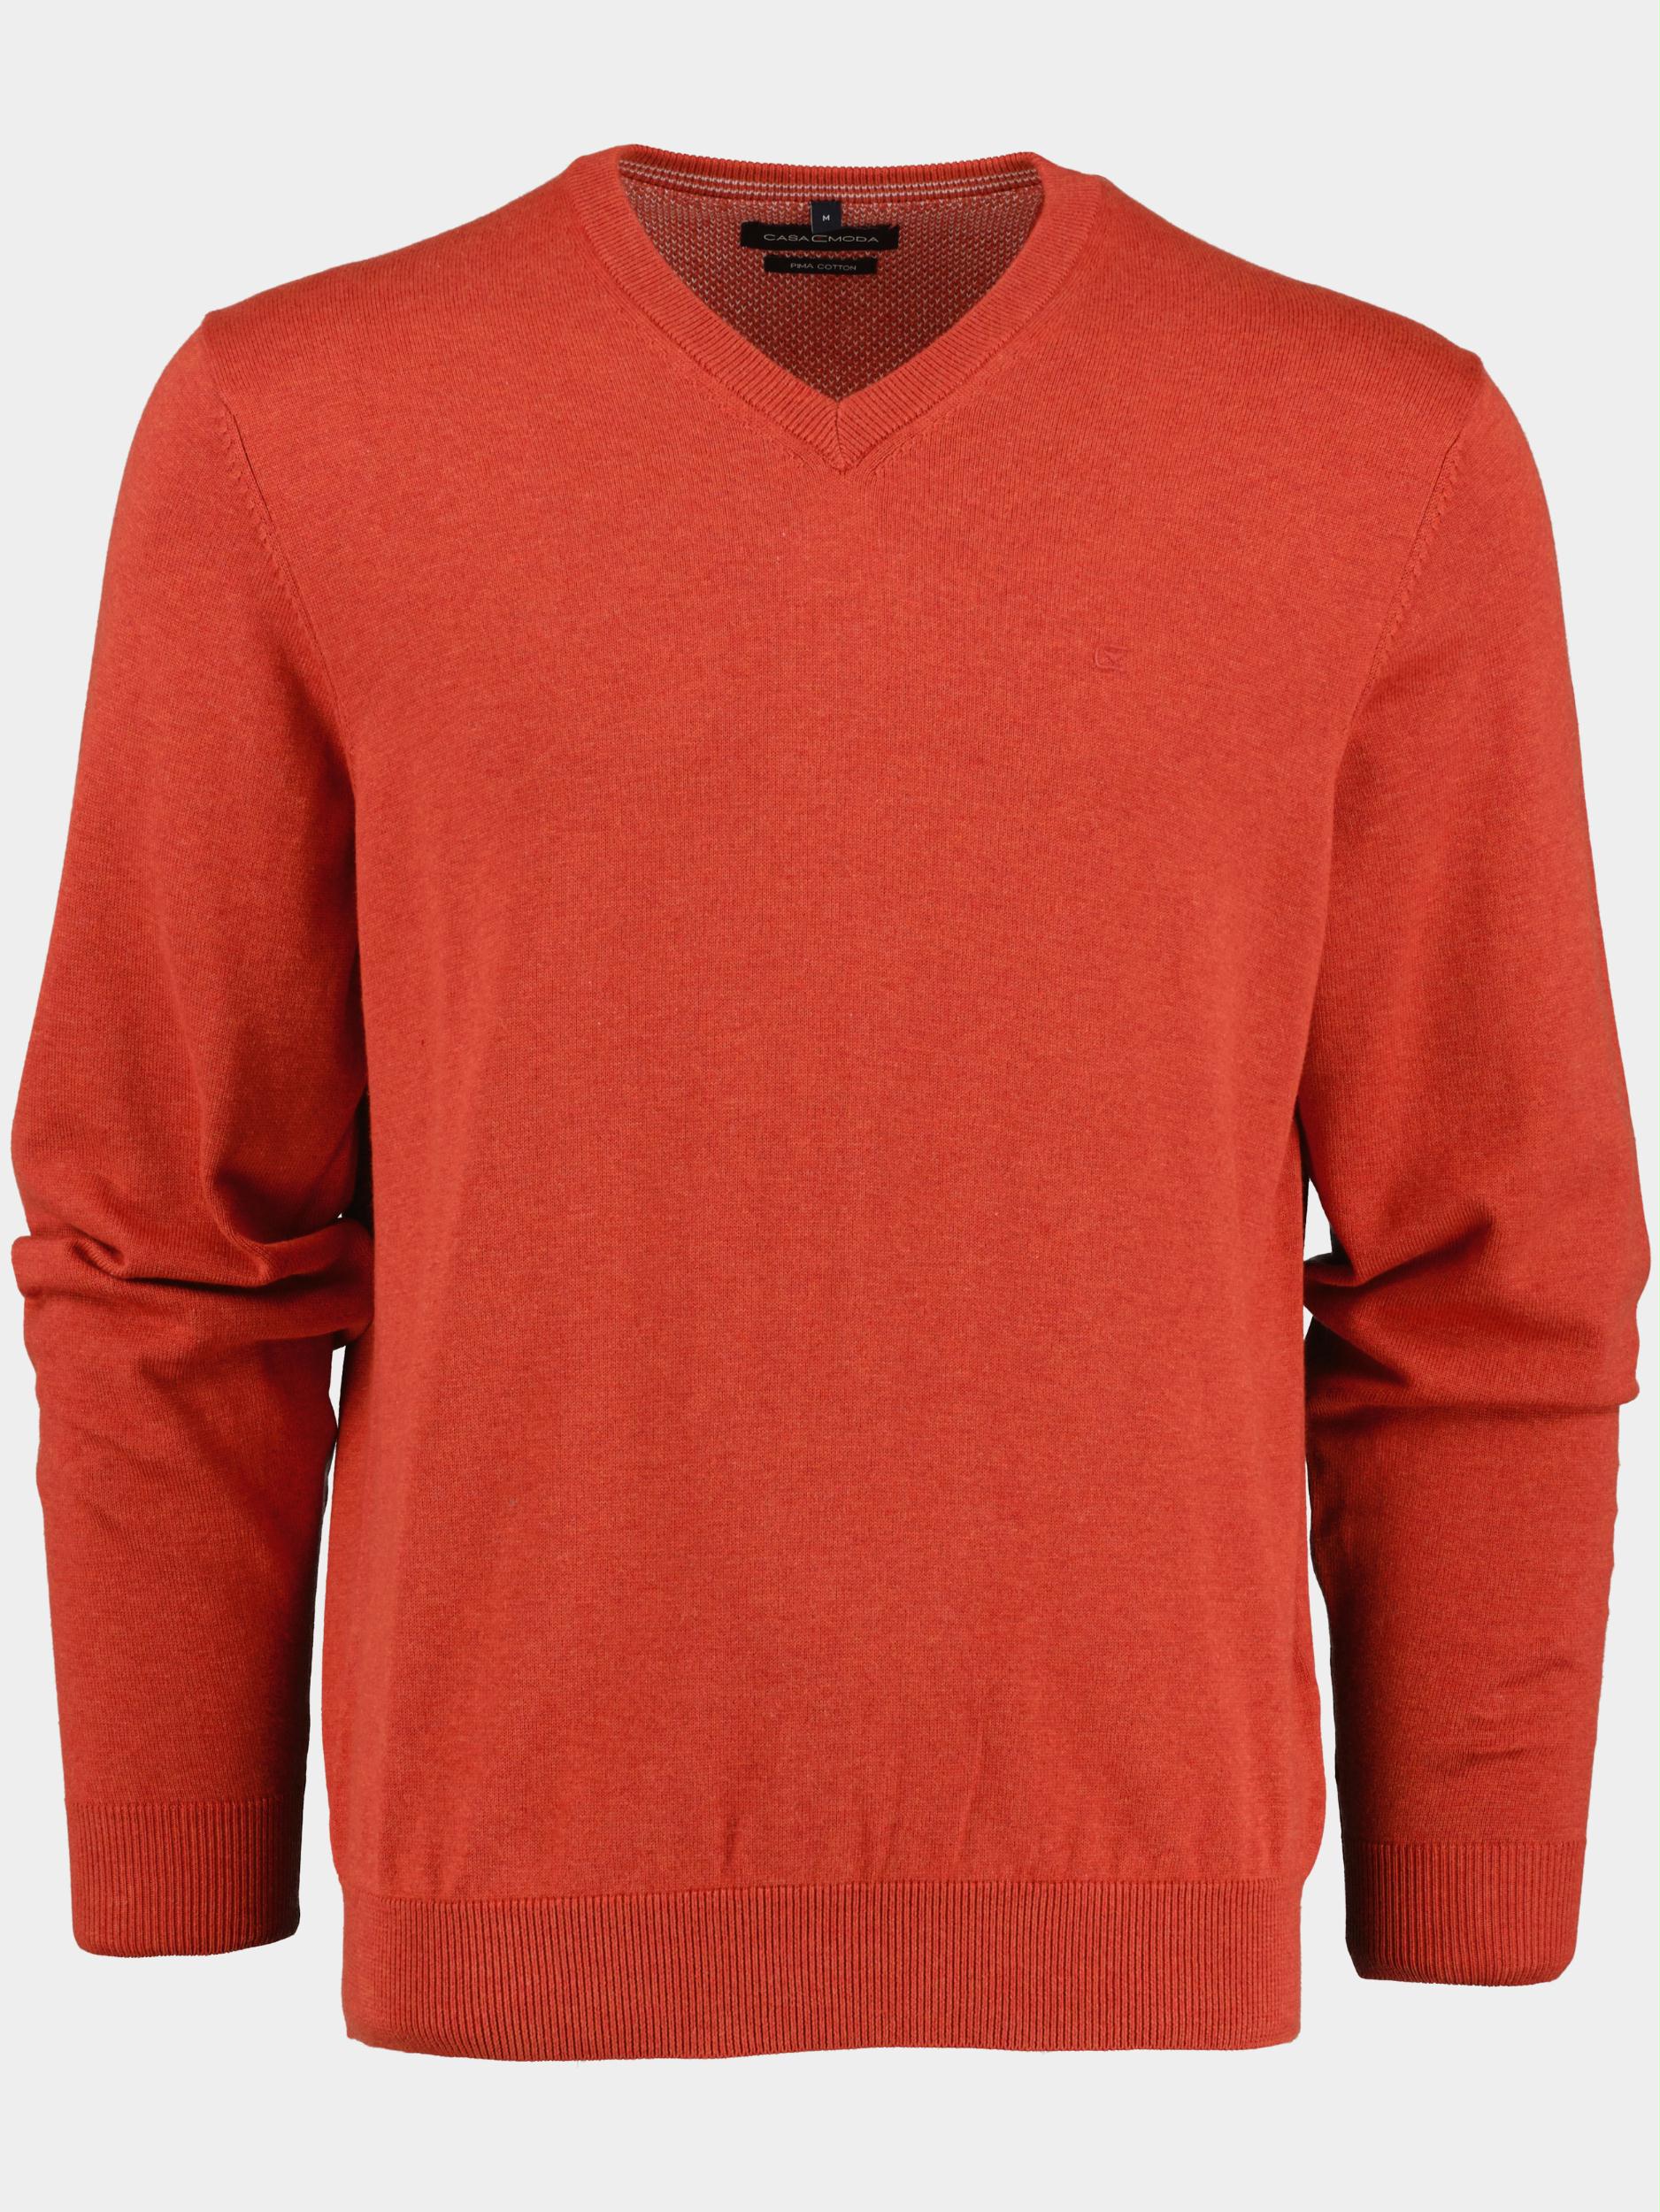 Casamoda Pullover Oranje Pullover V-Neck NOS 004430/486